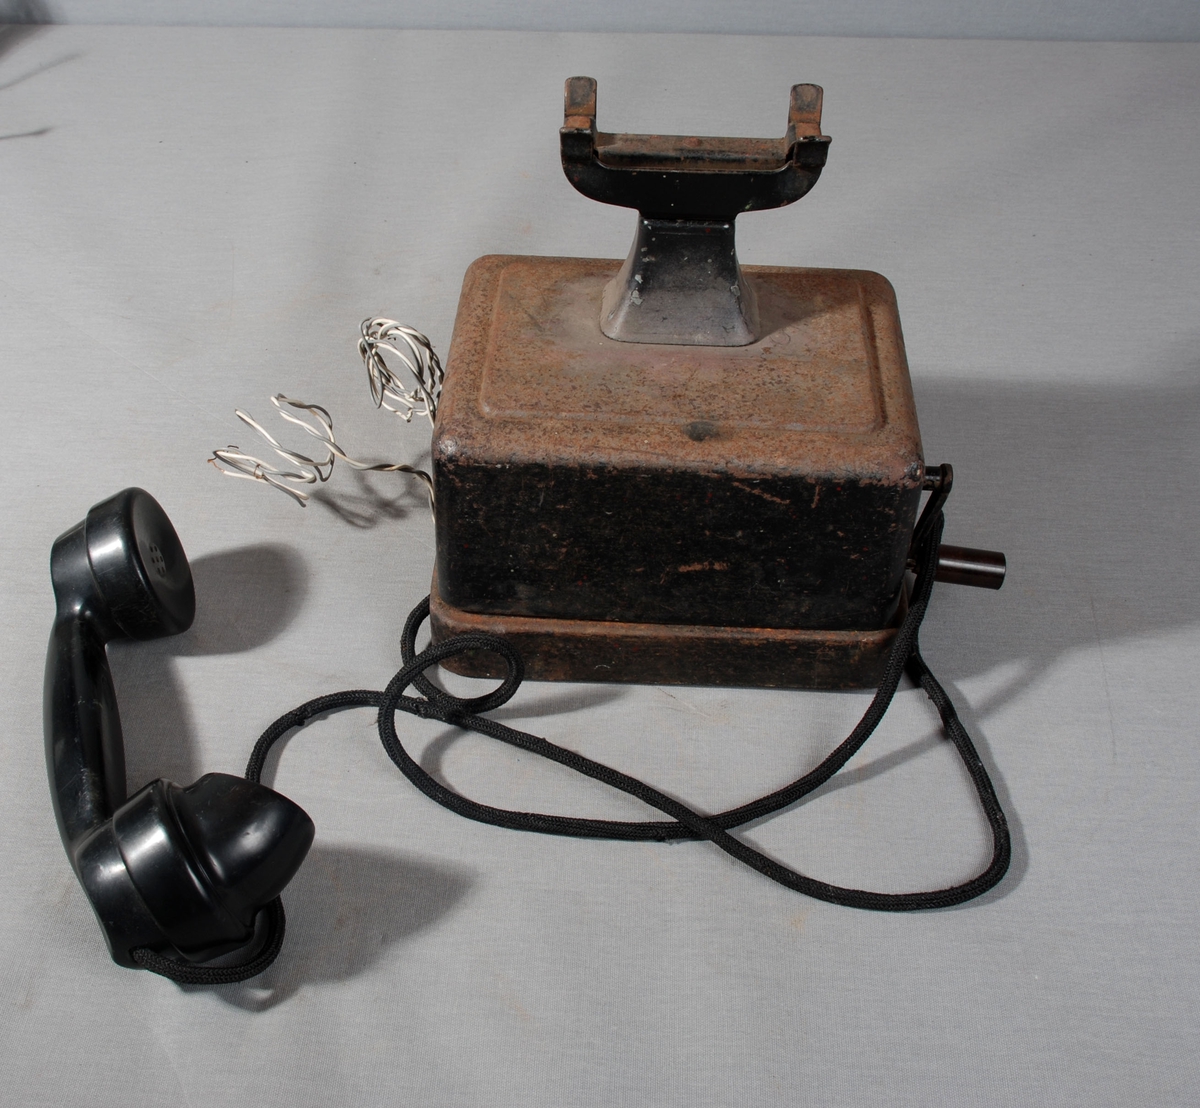 Telefonapparat med telelfonrør i gaffel på toppen av apparatet, sveiv på siden. Selve kassen står på sokkel av metall. 2 ledninger festet på siden av apparatet.